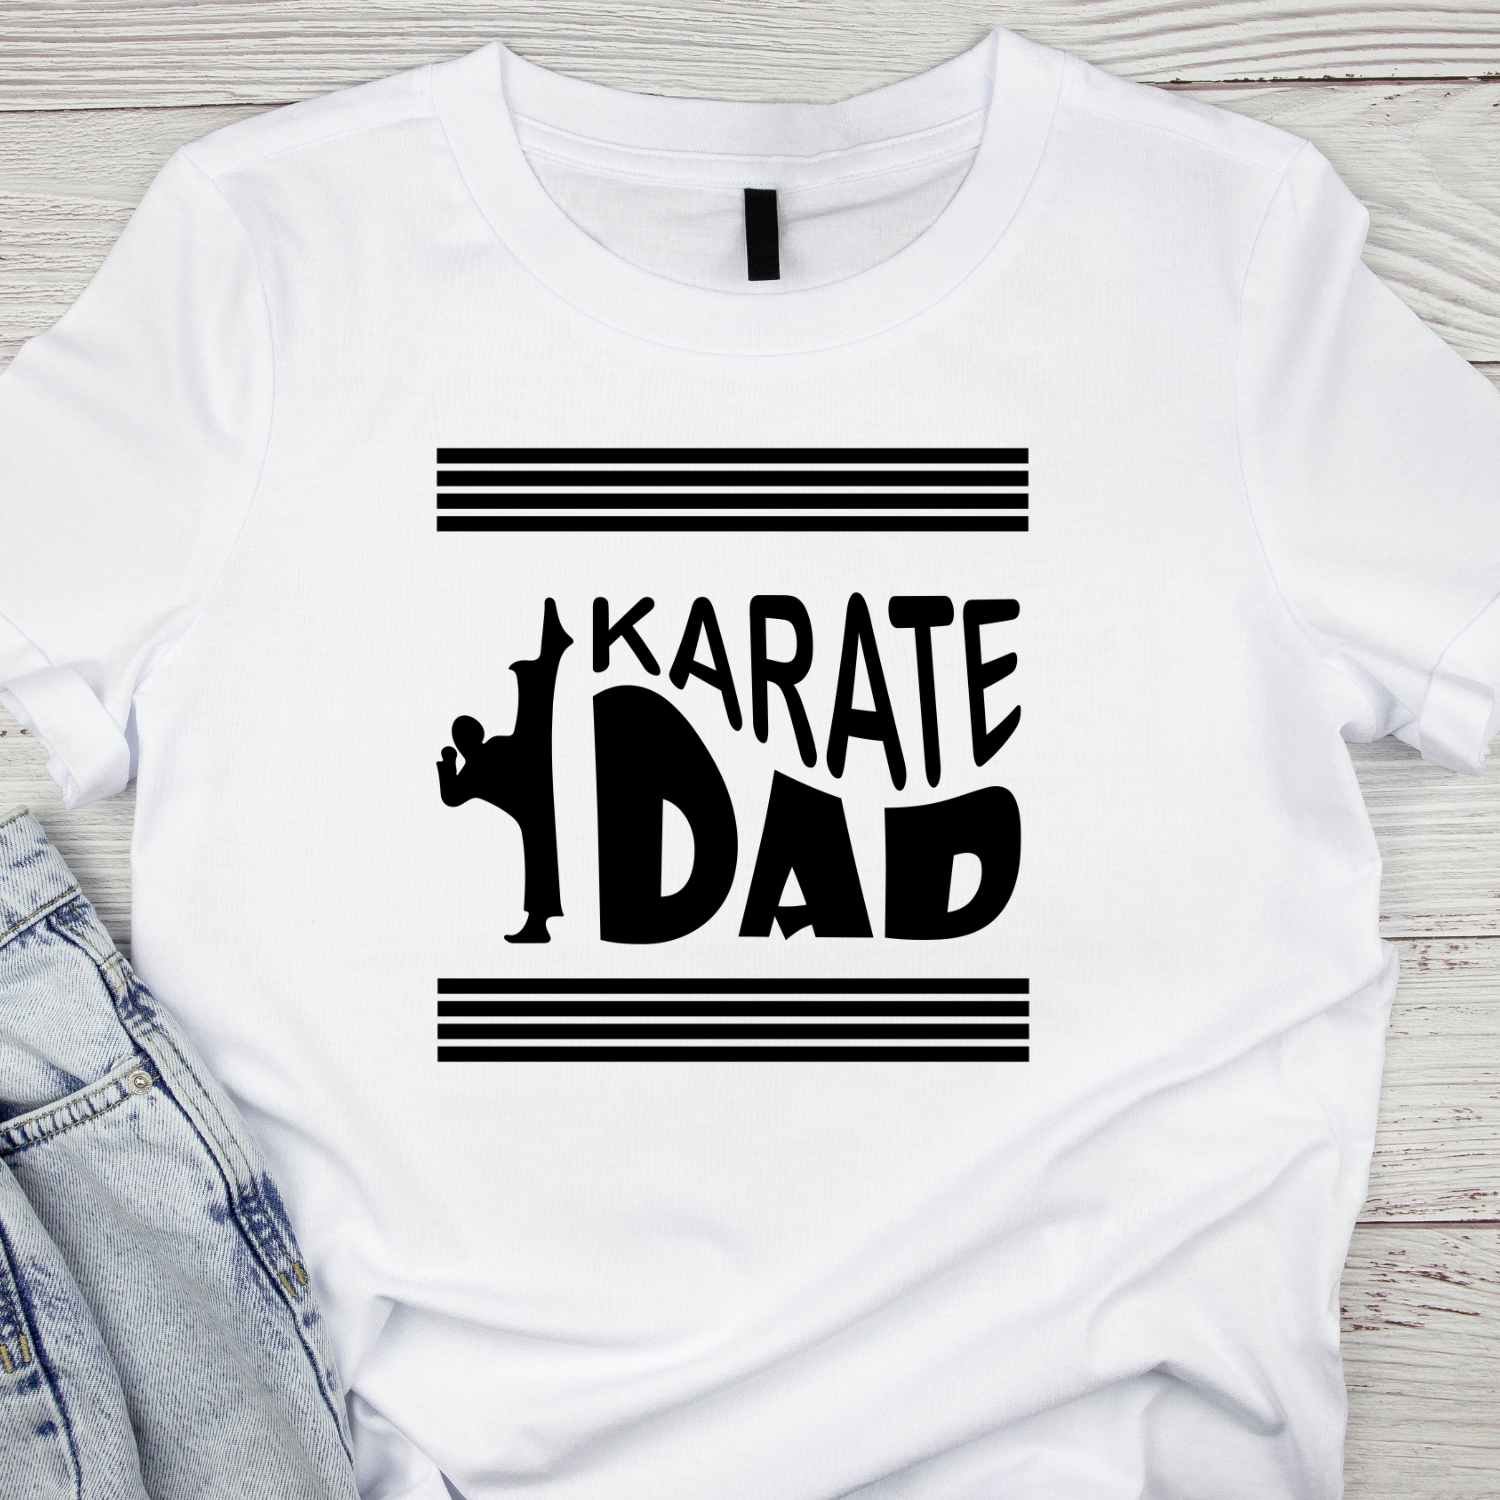 Karate Dad T-shirt Design for Men